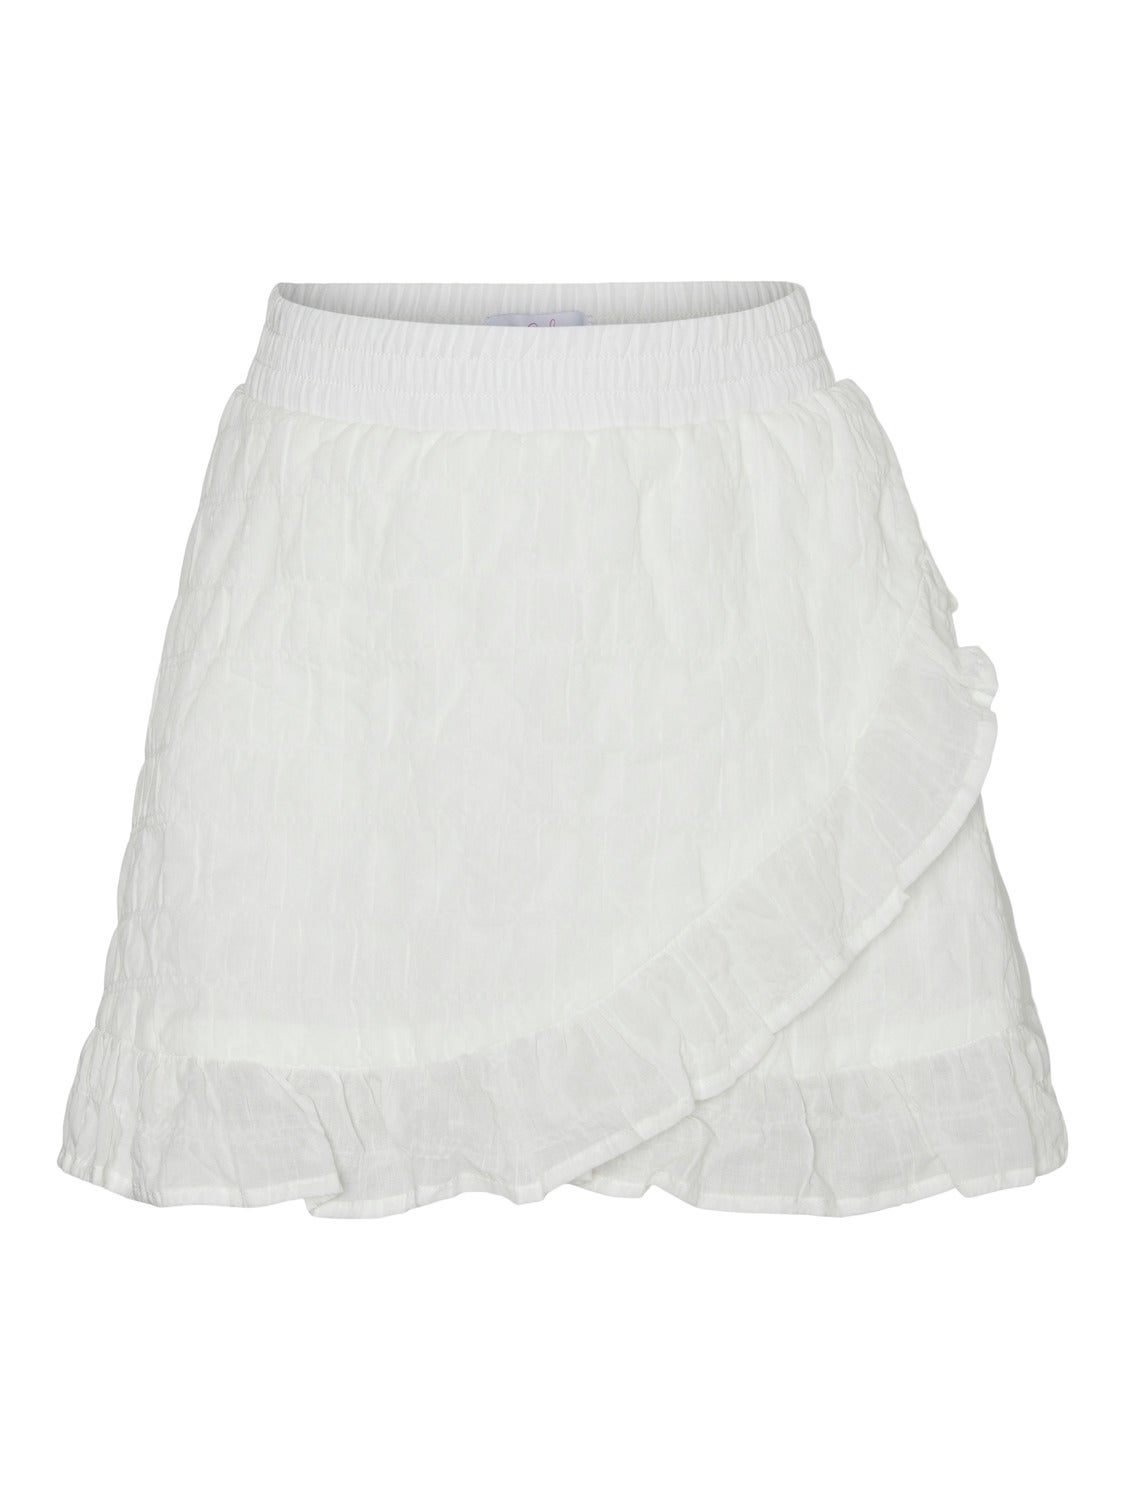 VMDONNA Short Skirt